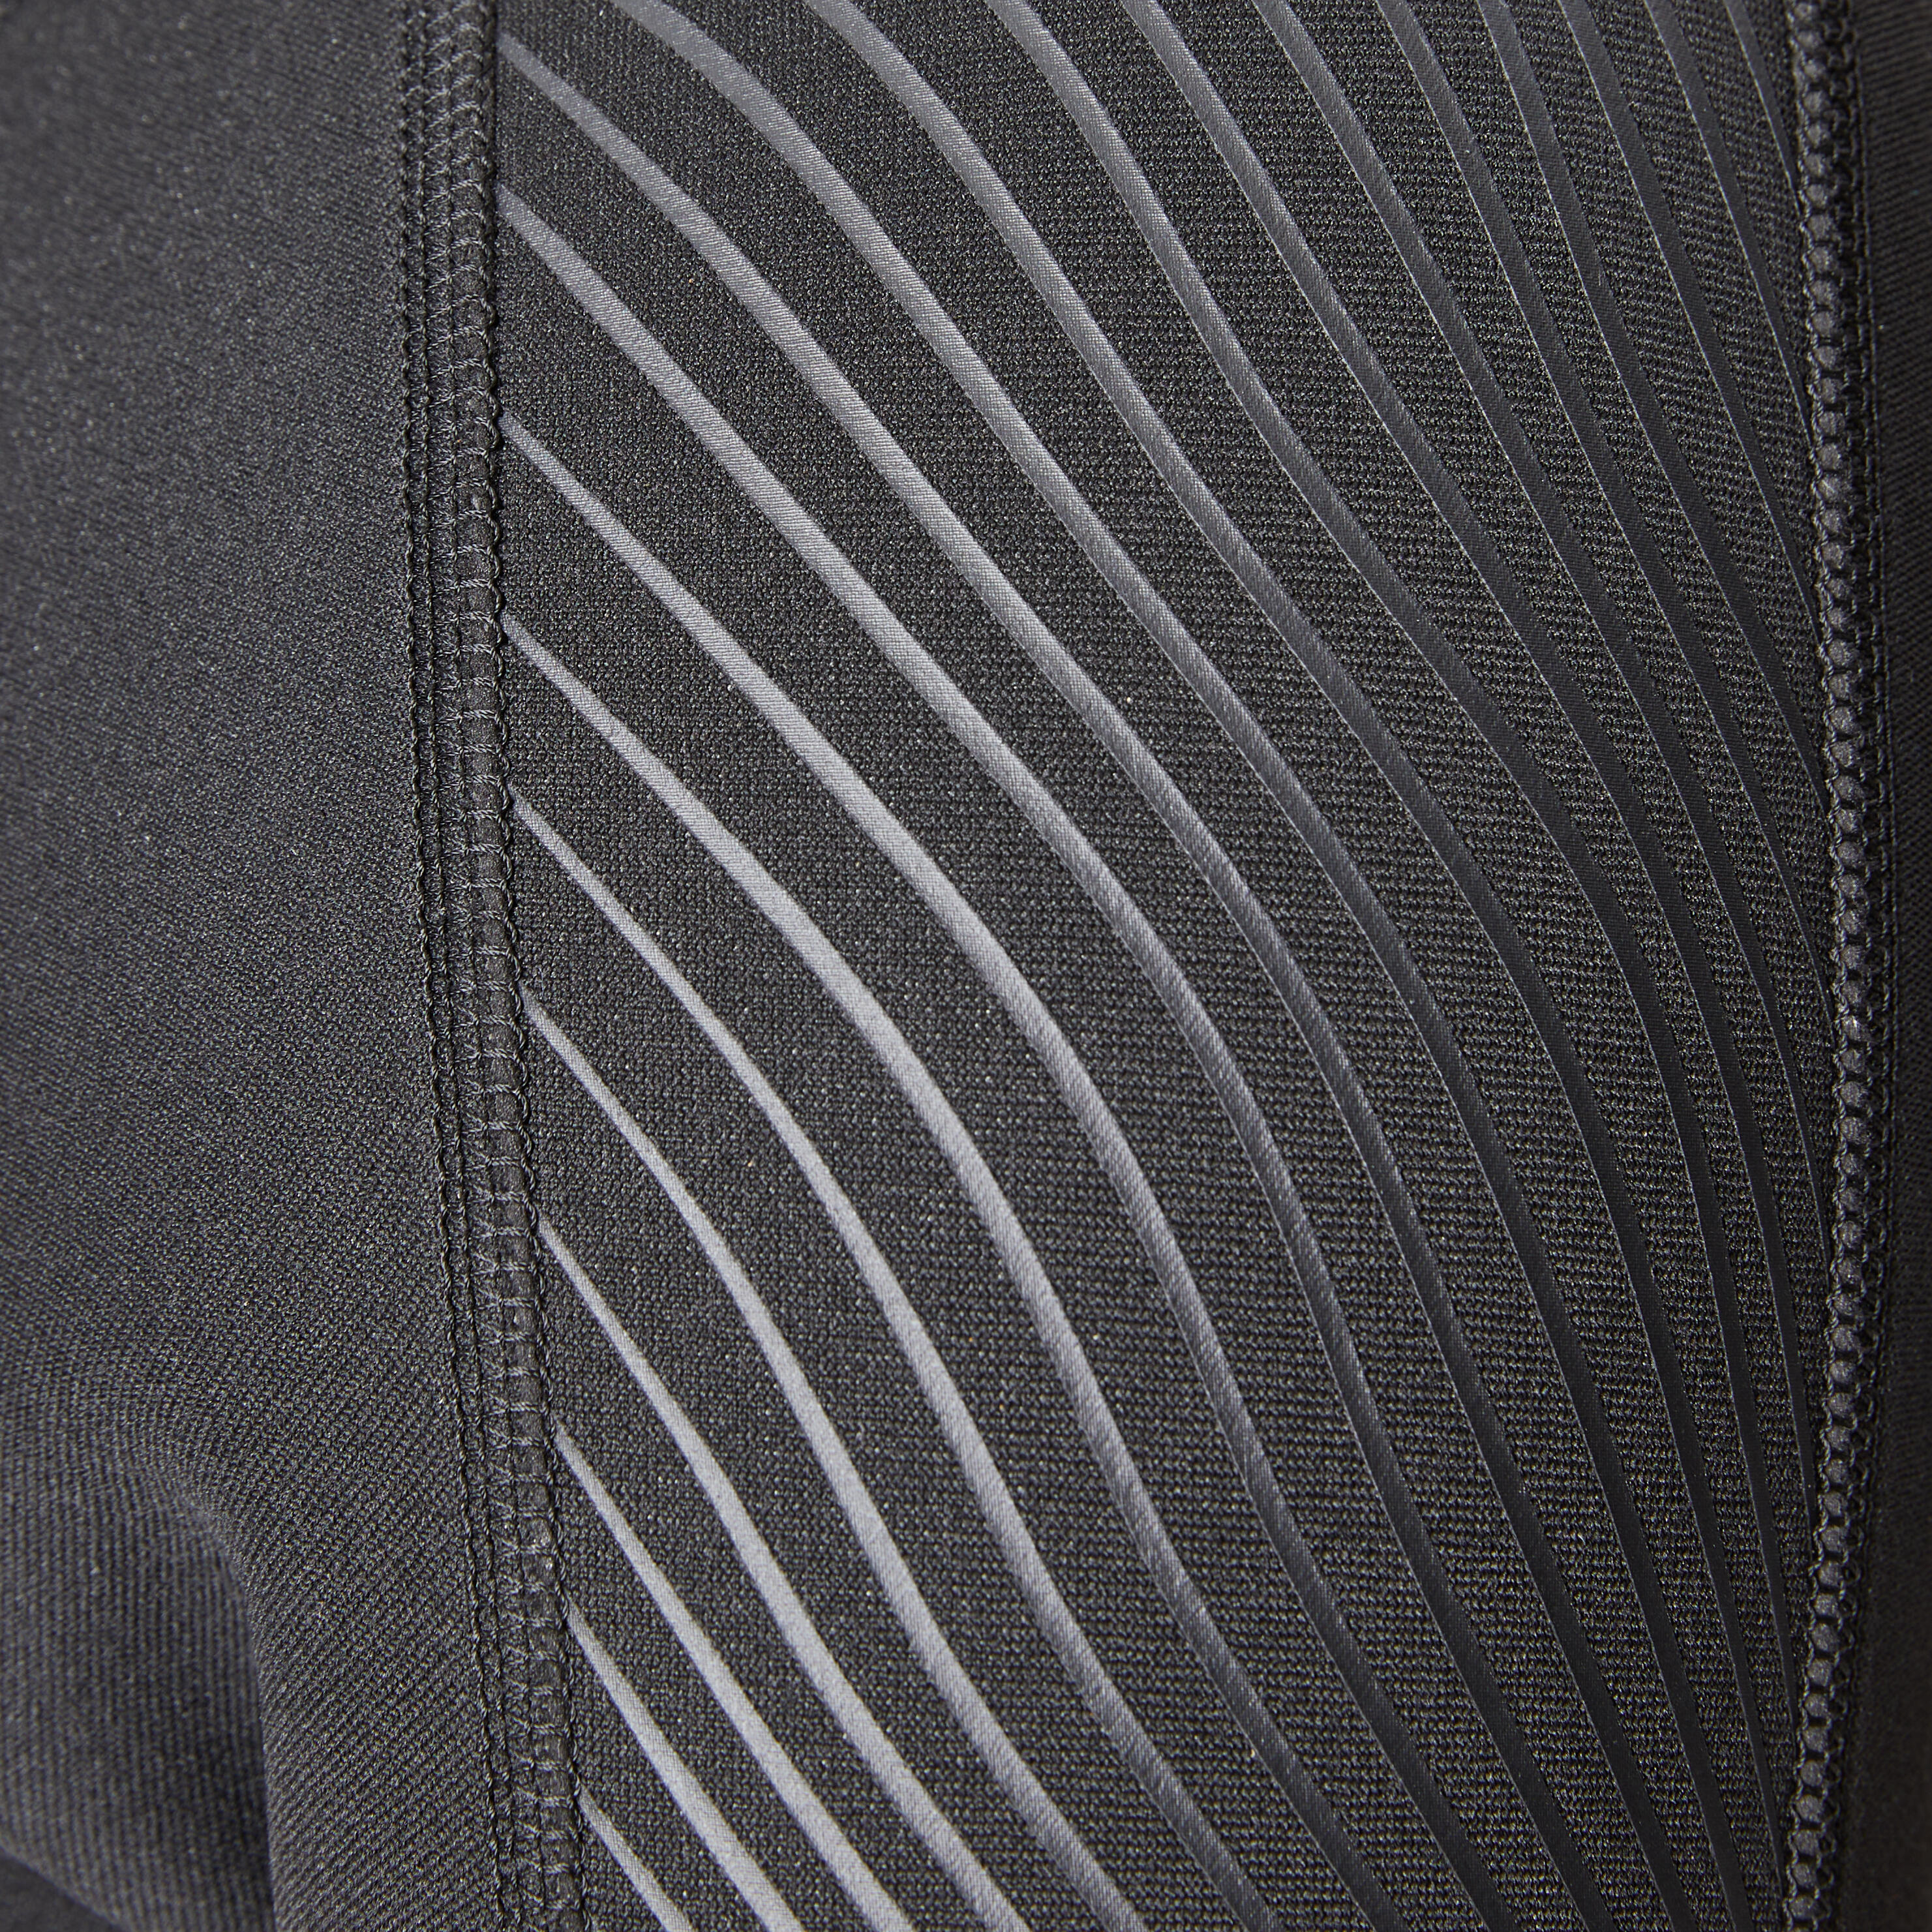 Men's 2 mm neoprene shorty wetsuit with diagonal front zip Easy 11/14